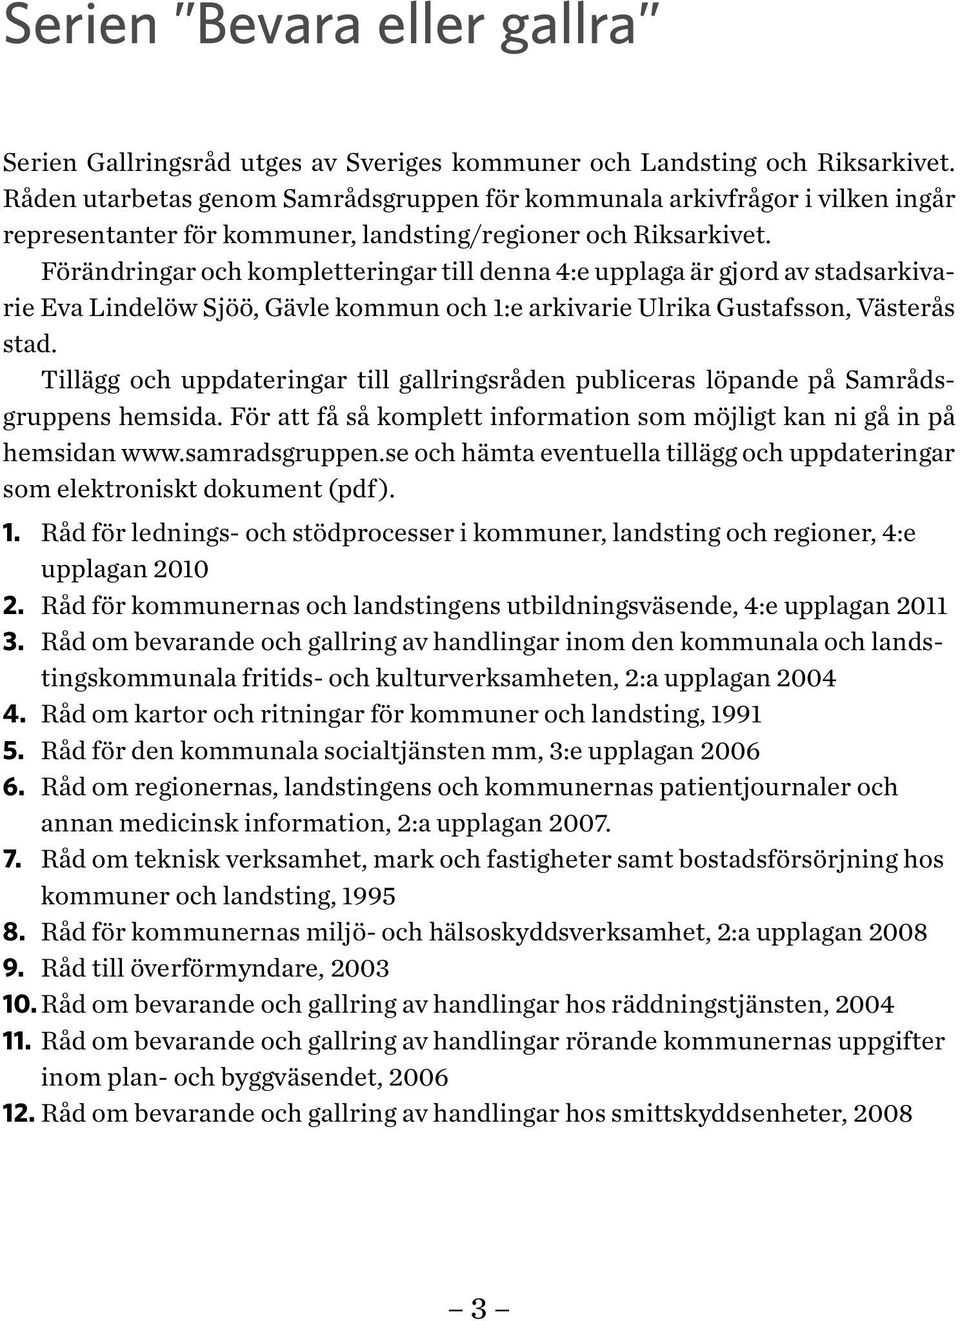 Förändringar och kompletteringar till denna 4:e upplaga är gjord av stadsarkivarie Eva Lindelöw Sjöö, Gävle kommun och 1:e arkivarie Ulrika Gustafsson, Västerås stad.